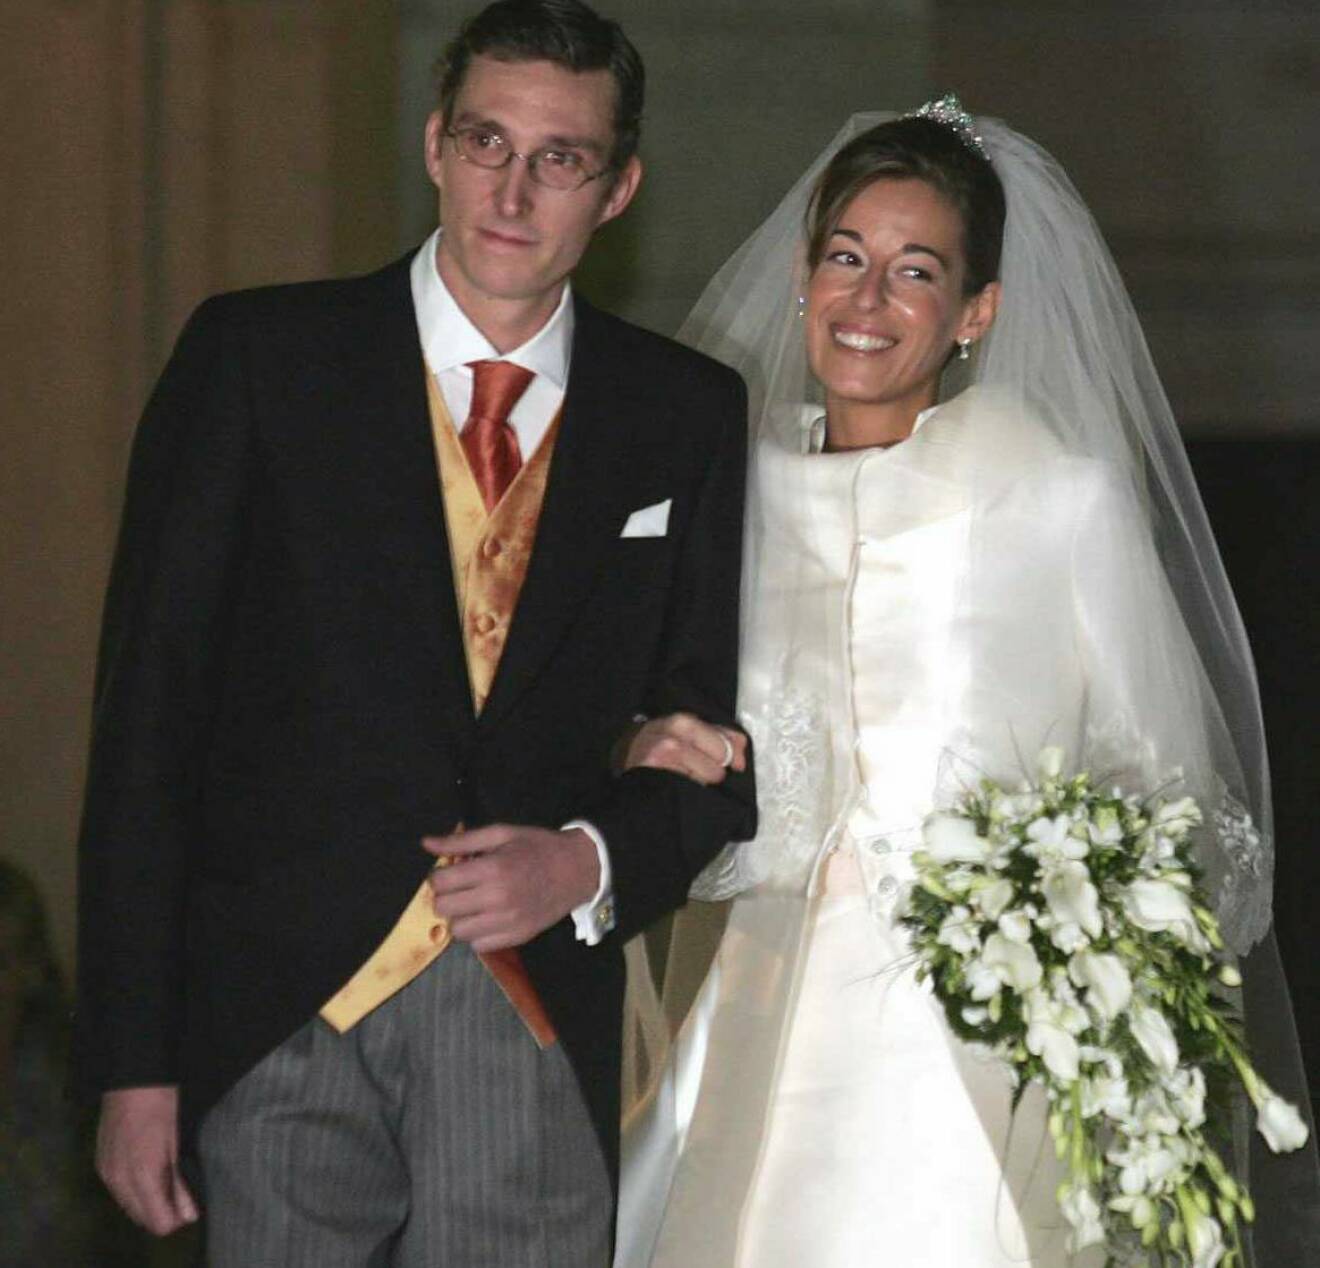 Fernando Gómez-Acebo vid sitt bröllop med Monica Fernan Luque 2004